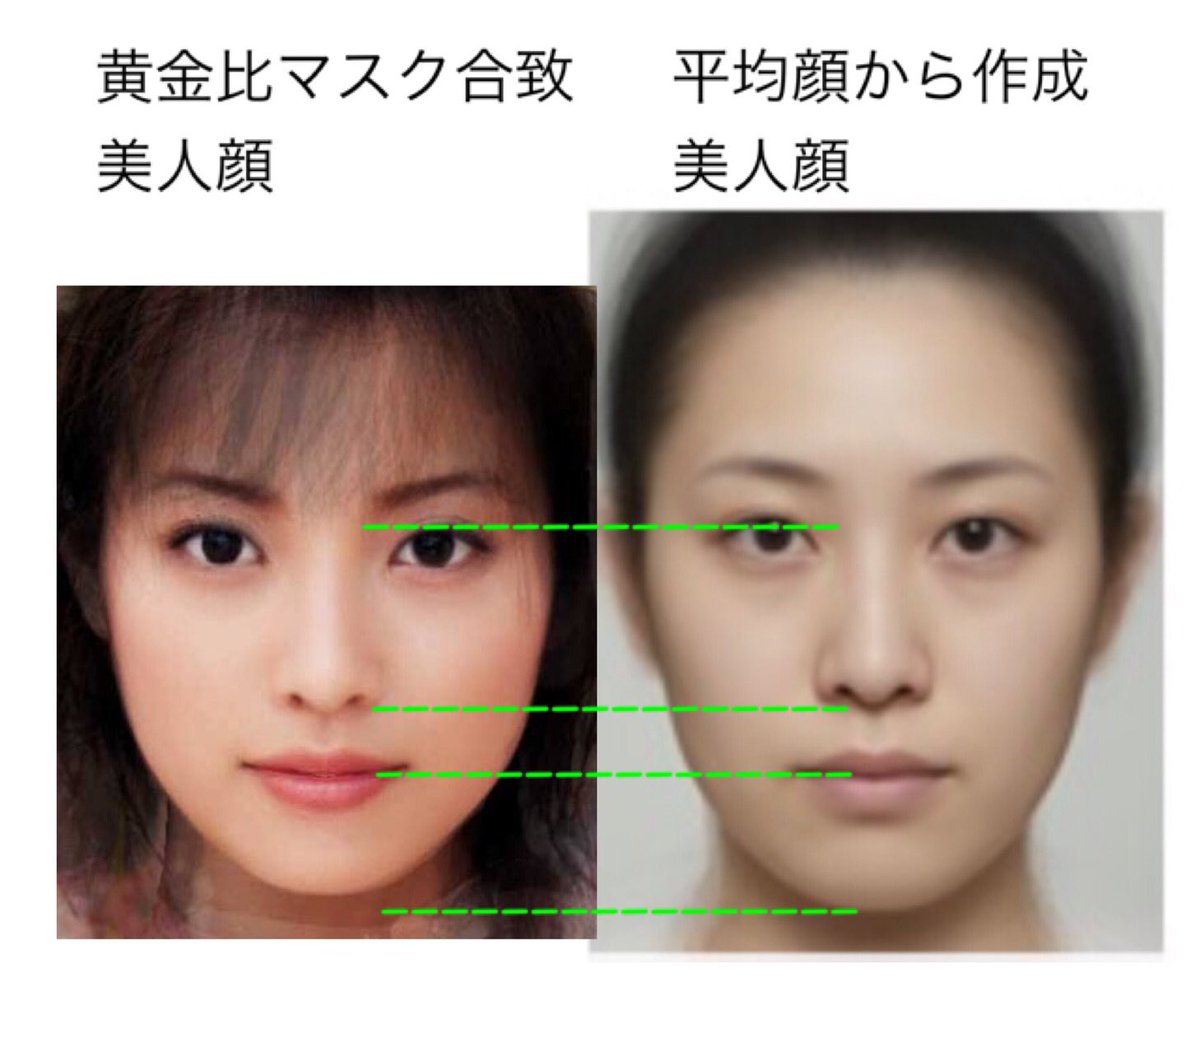 日本 人 顔 の 大き さ 平均 典型的韓国人顔 日本人顔 中国人顔って比較して意味あるの 院長ブログ 五本木クリニック Amp Petmd Com